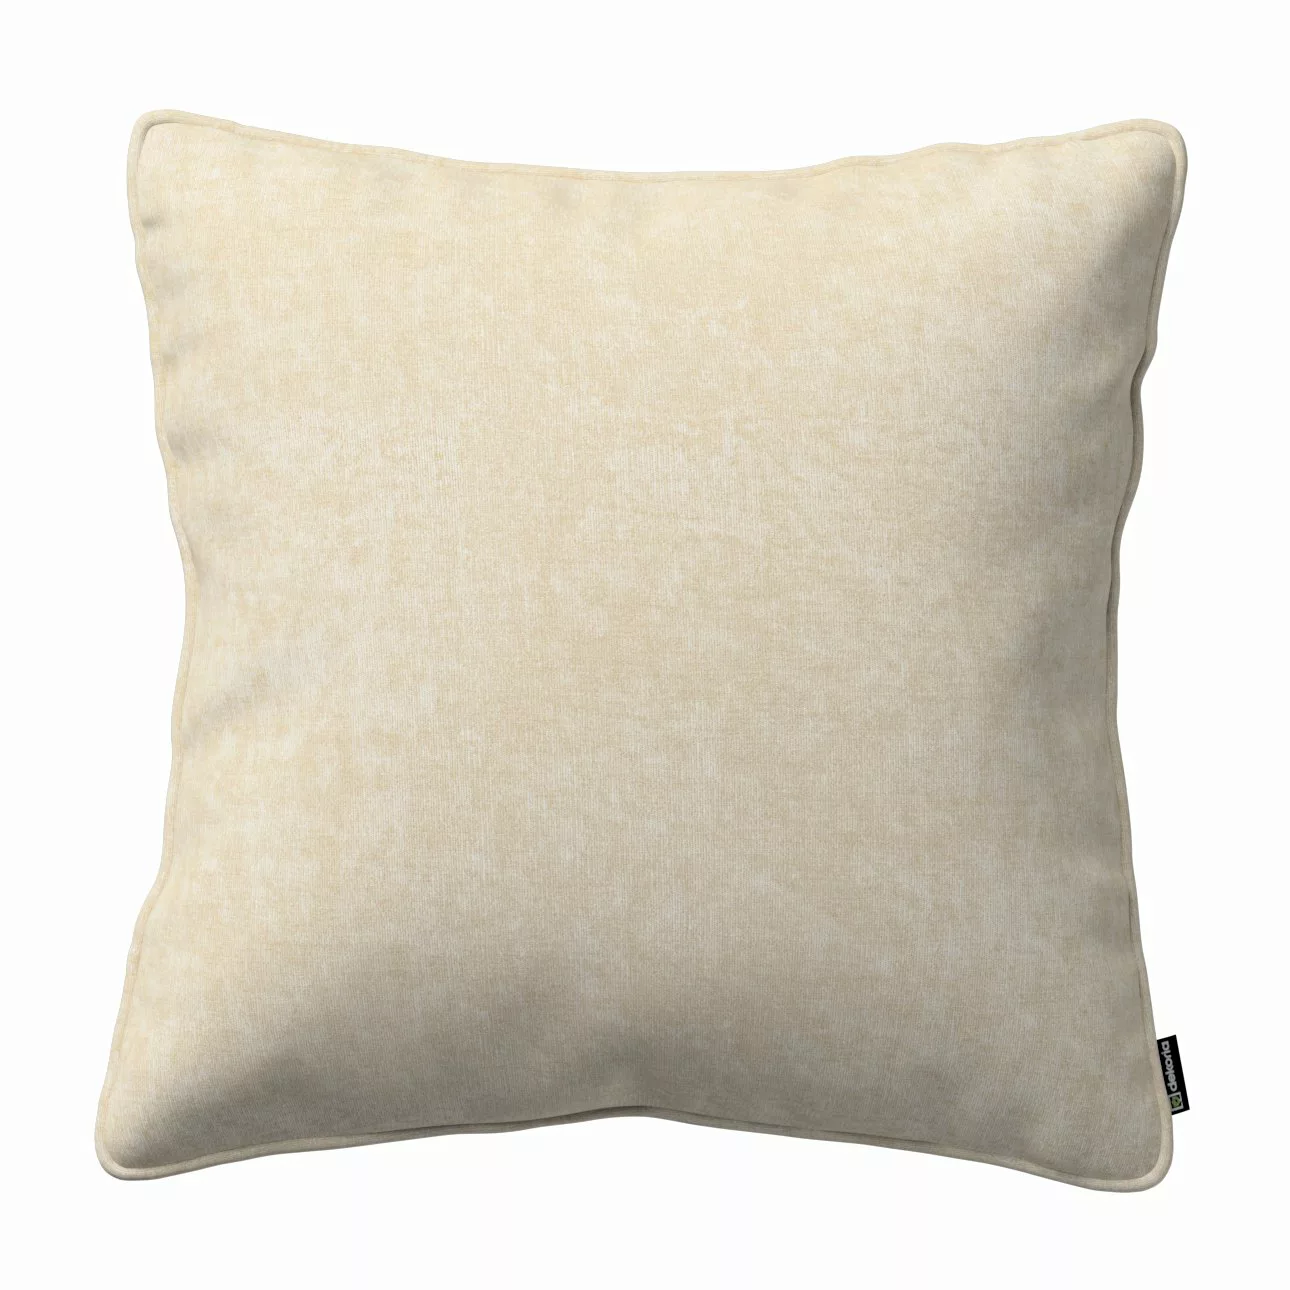 Kissenhülle Gabi mit Paspel, grau-beige, 60 x 60 cm, Chenille (162-26) günstig online kaufen